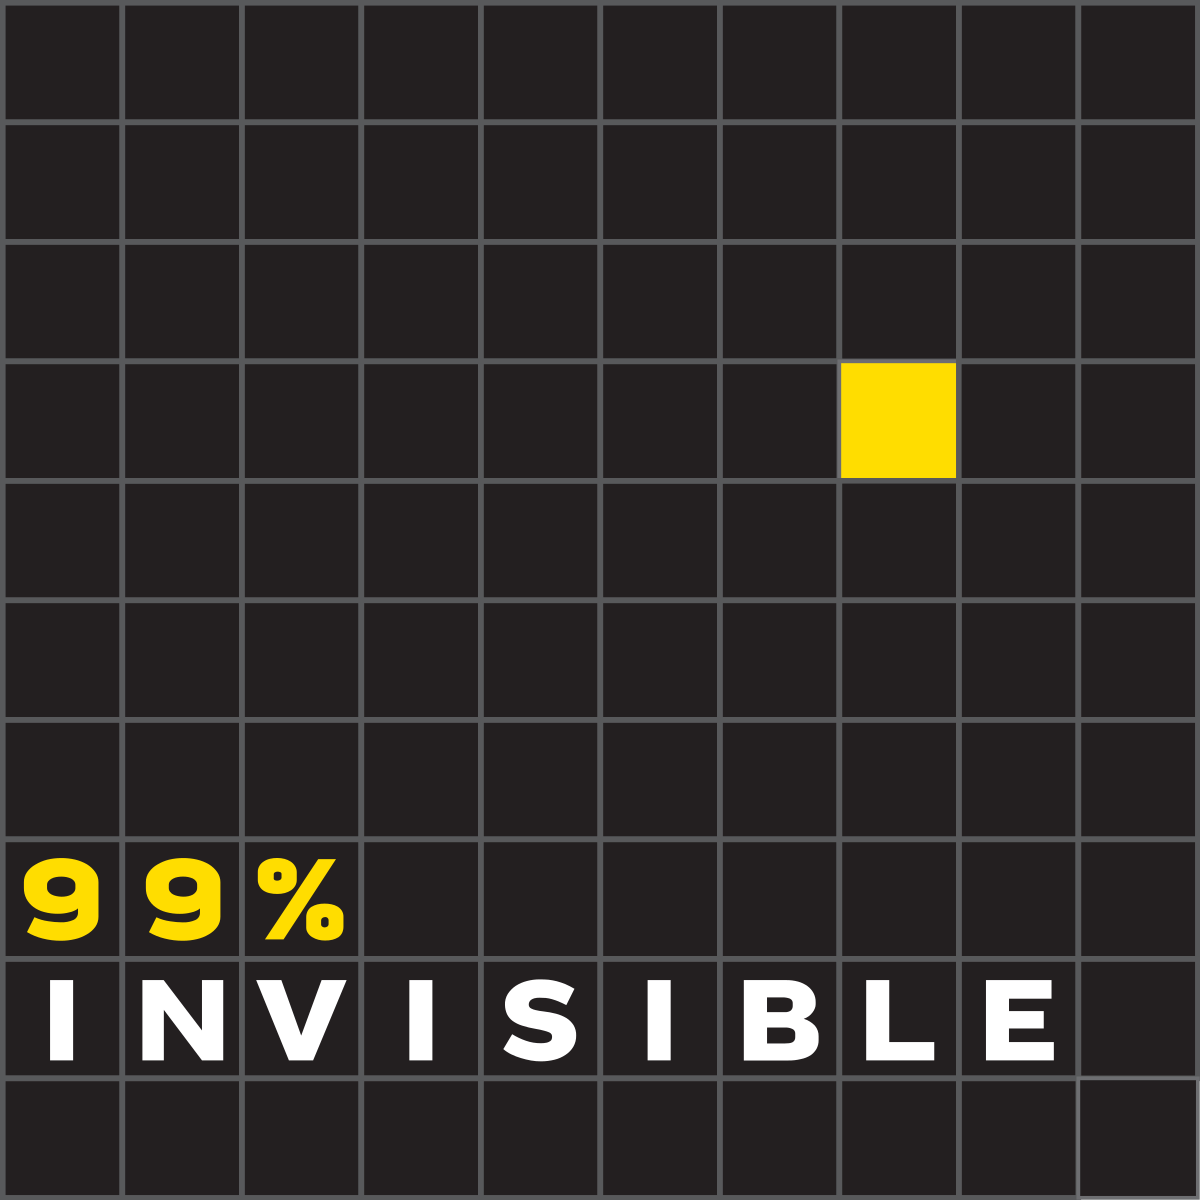 99% Invisible - Wikipedia